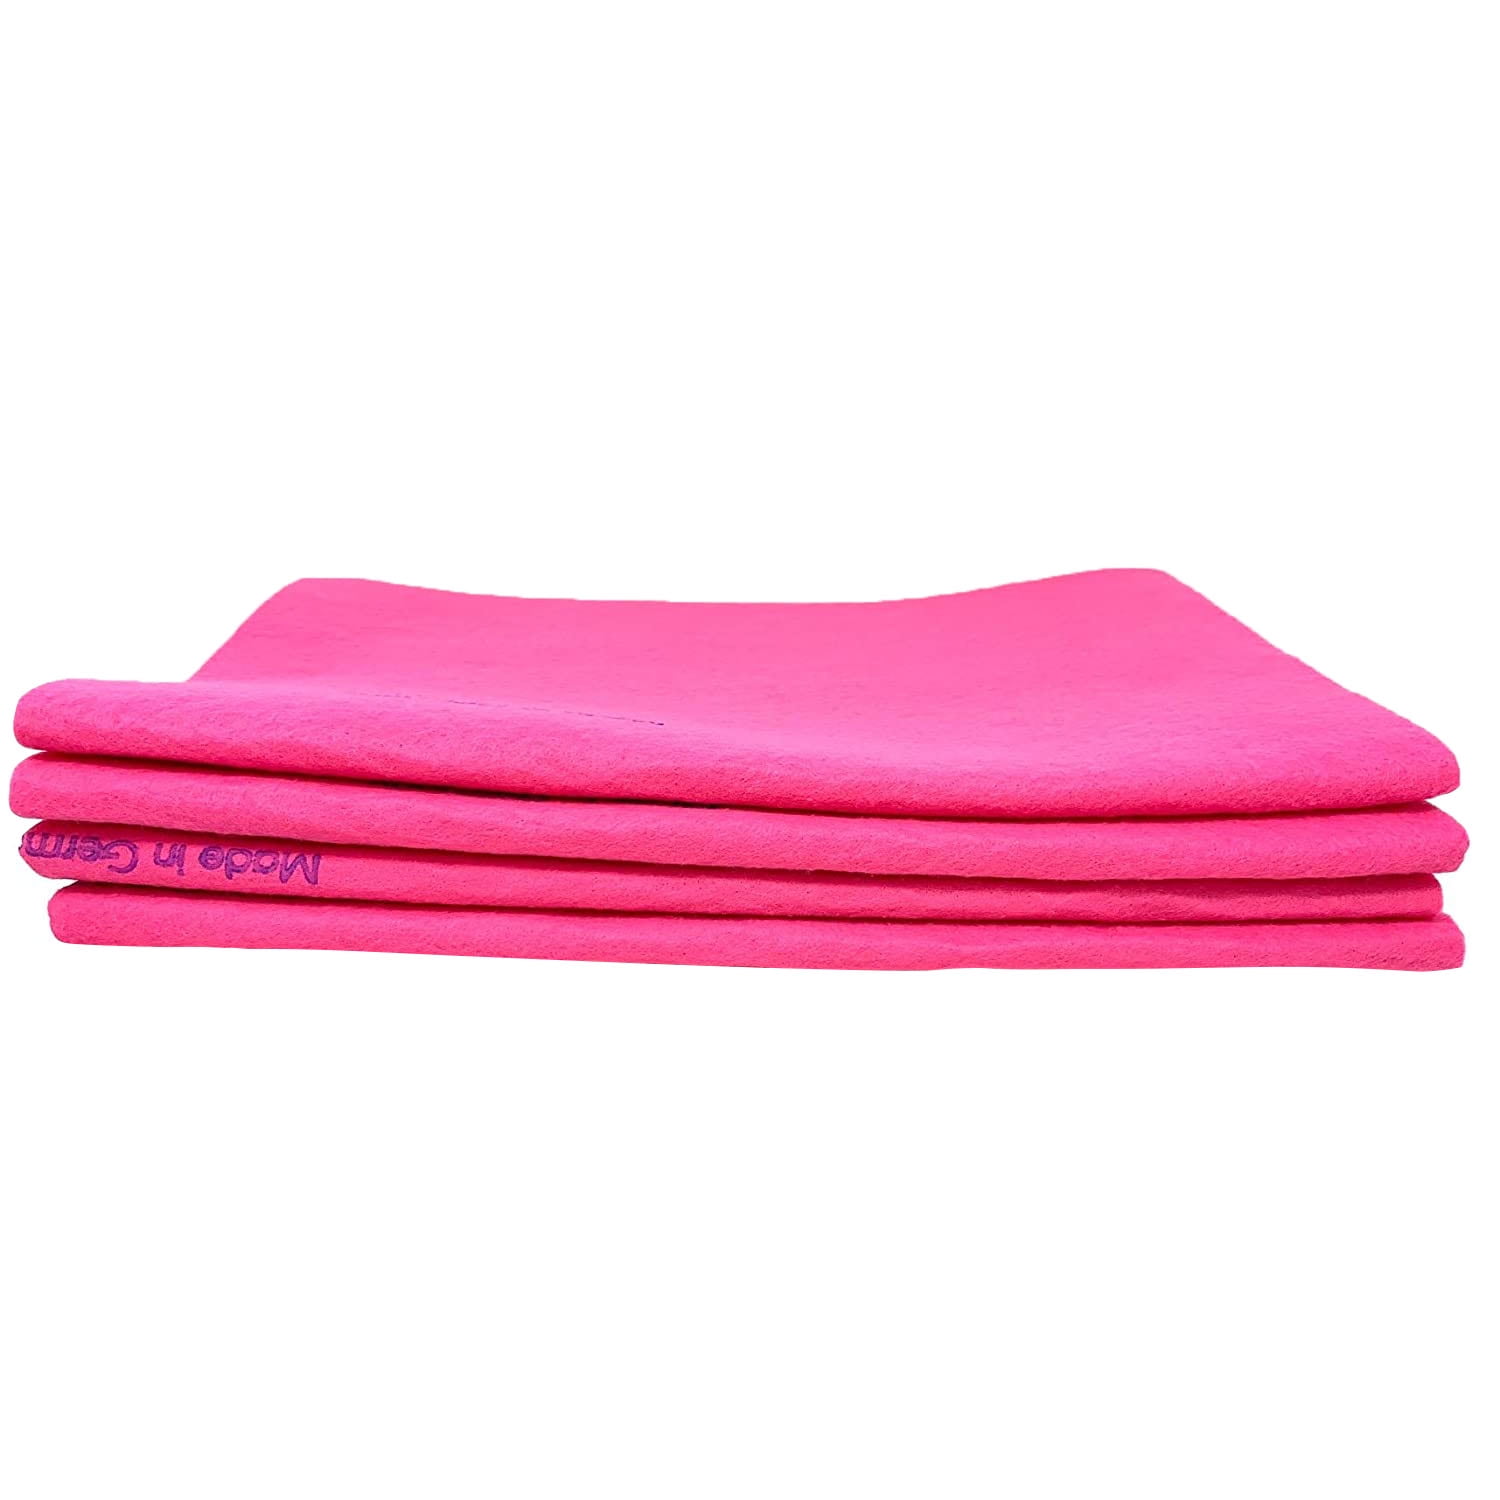 Original German Shammy Towels Super Absorbent Cloth 27 x 20 colcha 3,6,12 cloths 